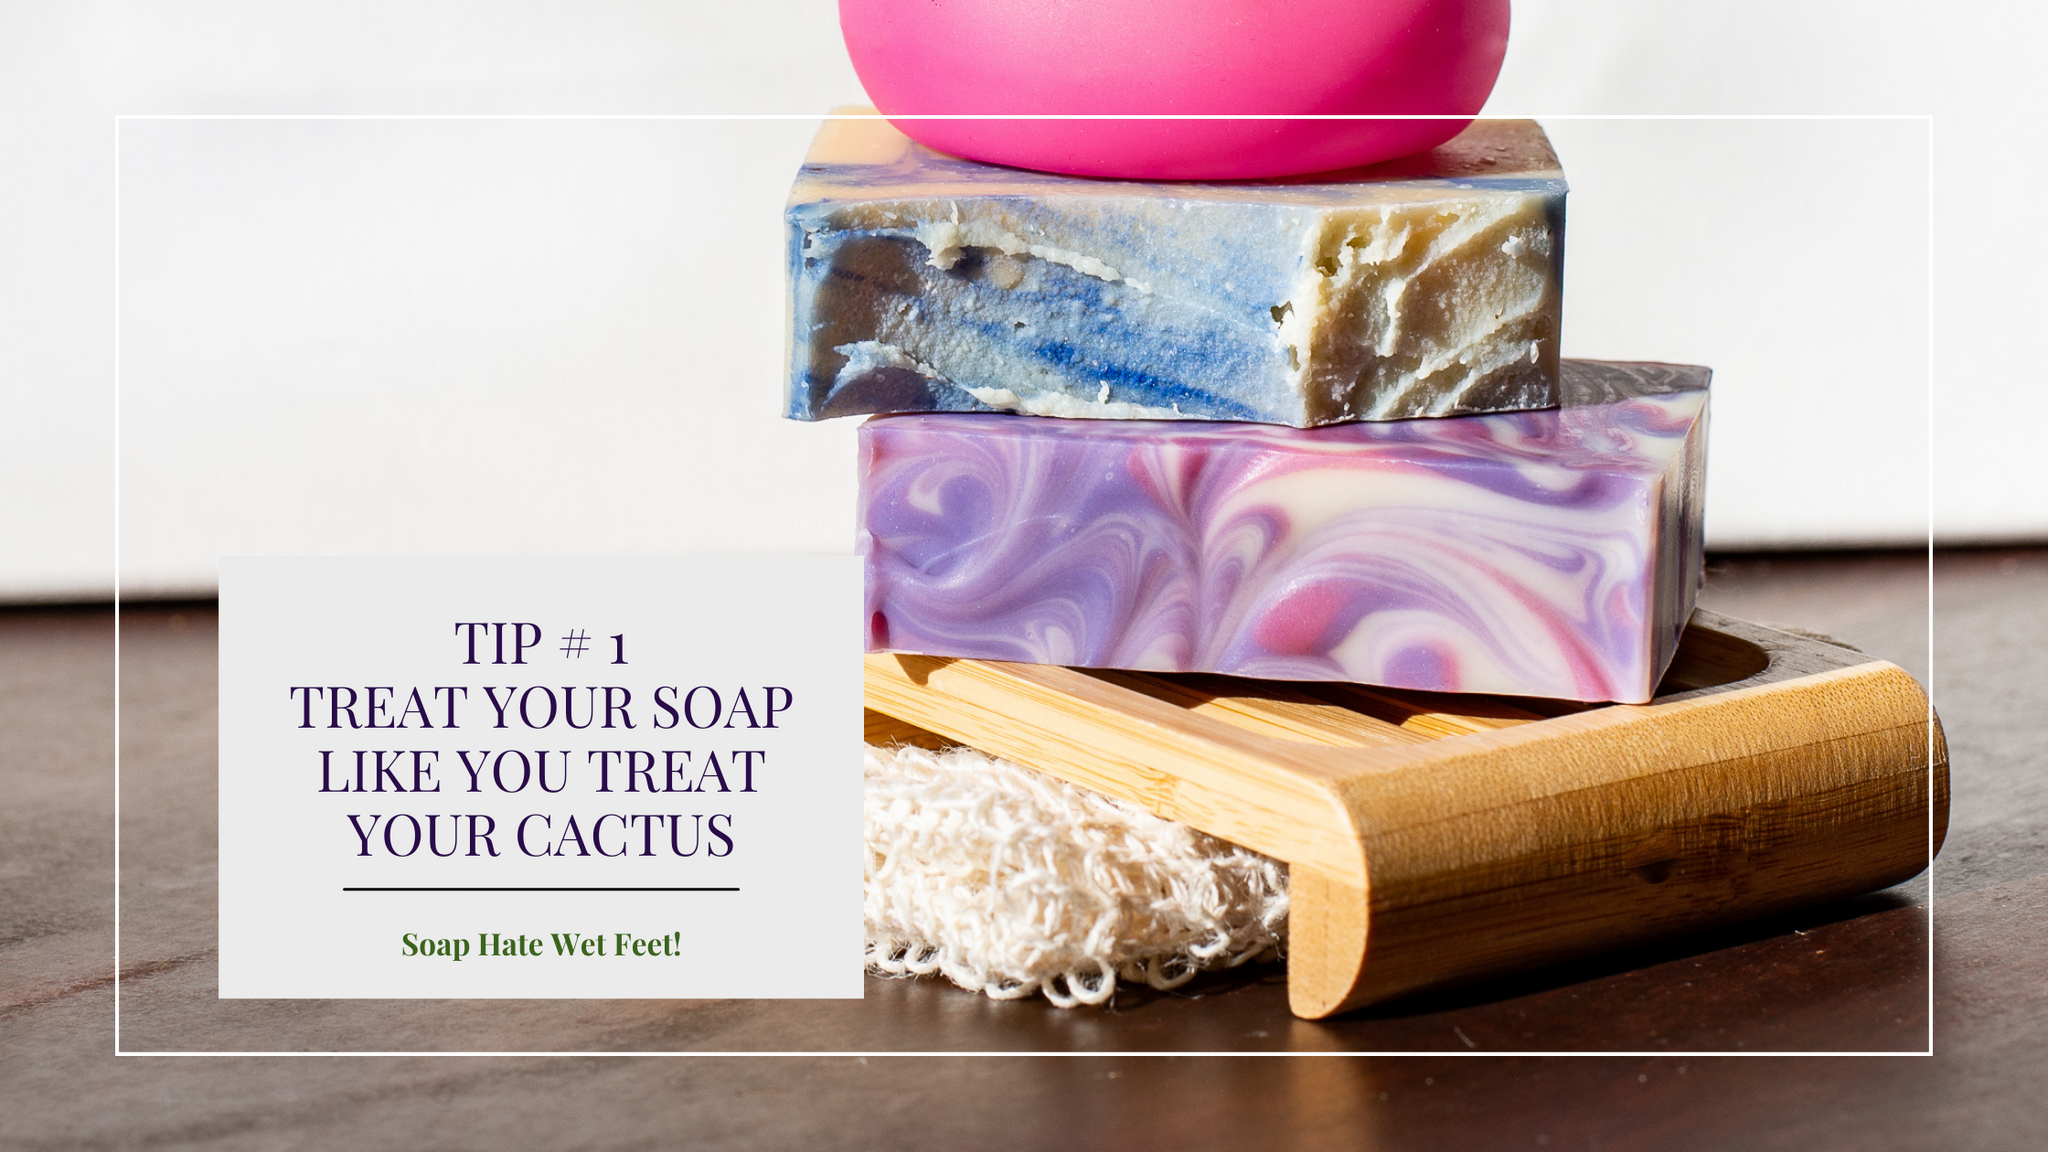 Use a zero waste soap dish